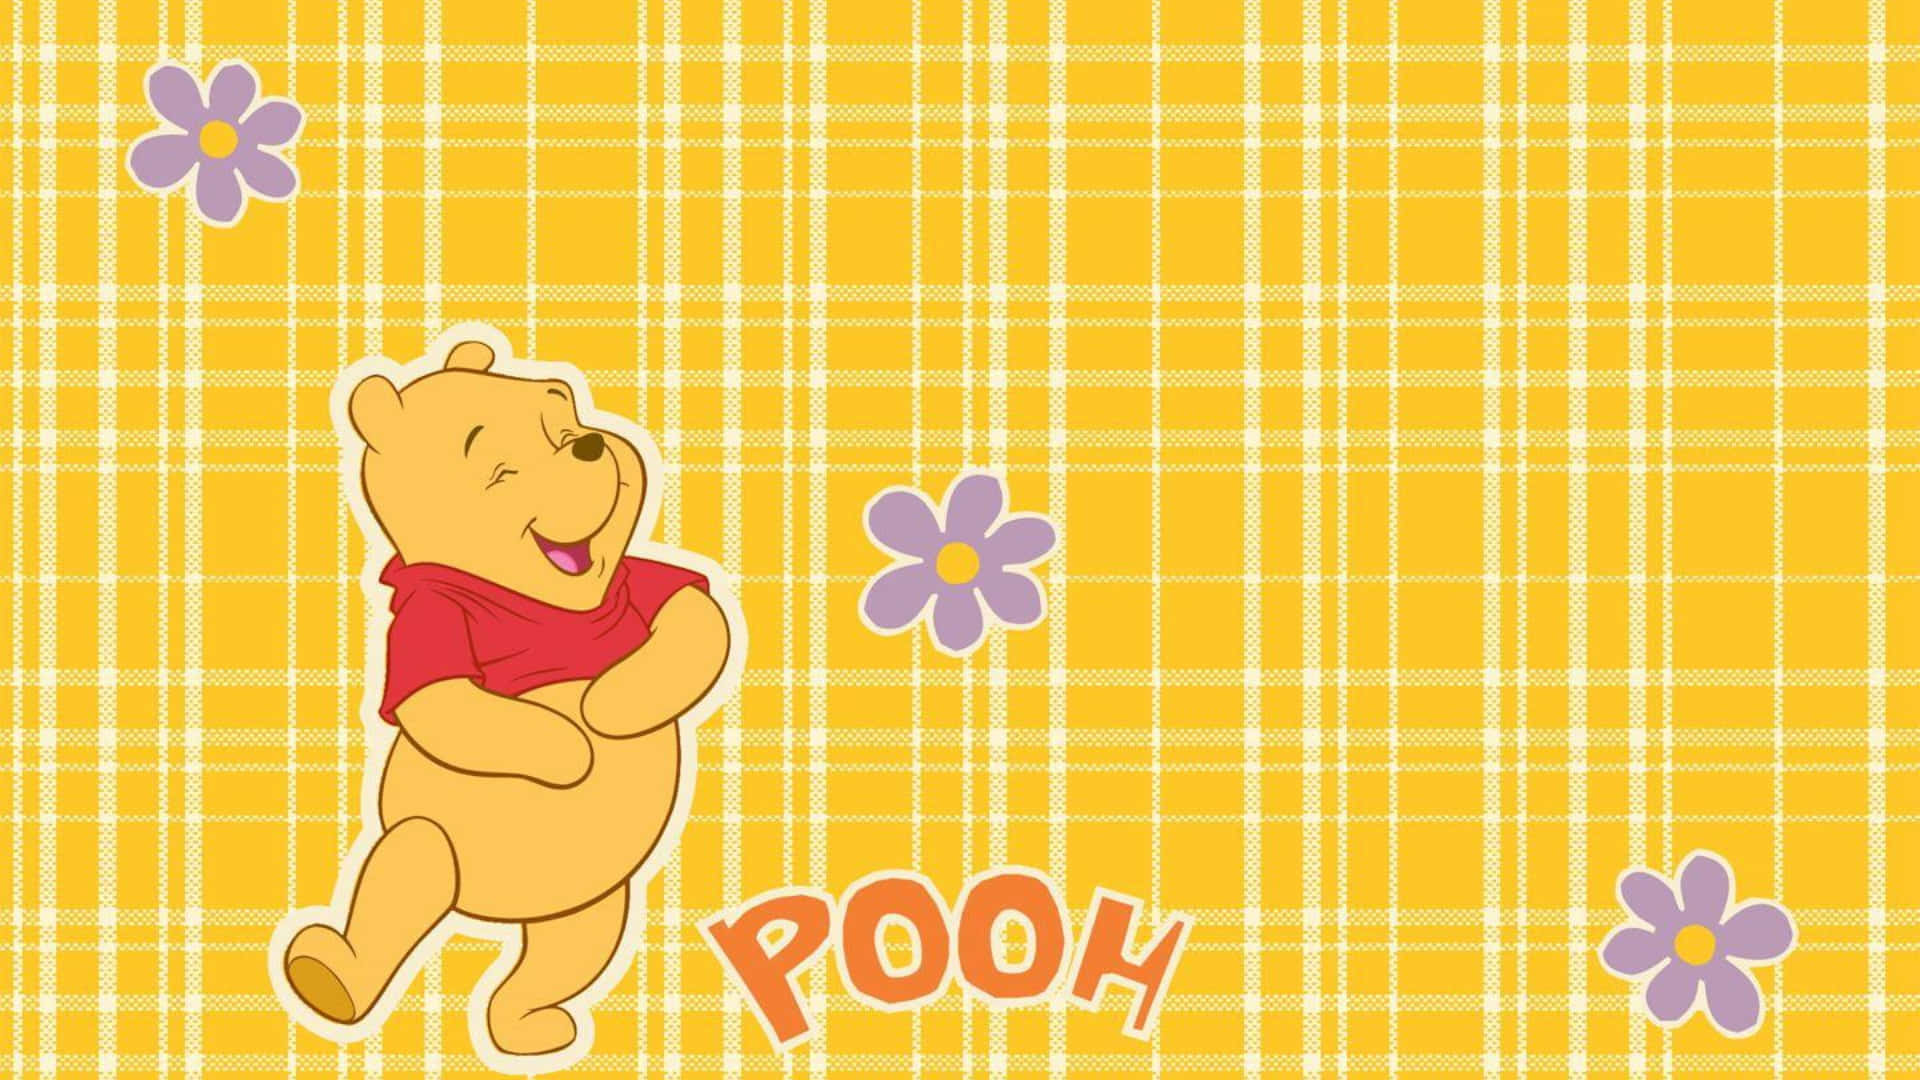 Comienzael Día Con Tu Laptop Favorita De Pooh. Fondo de pantalla